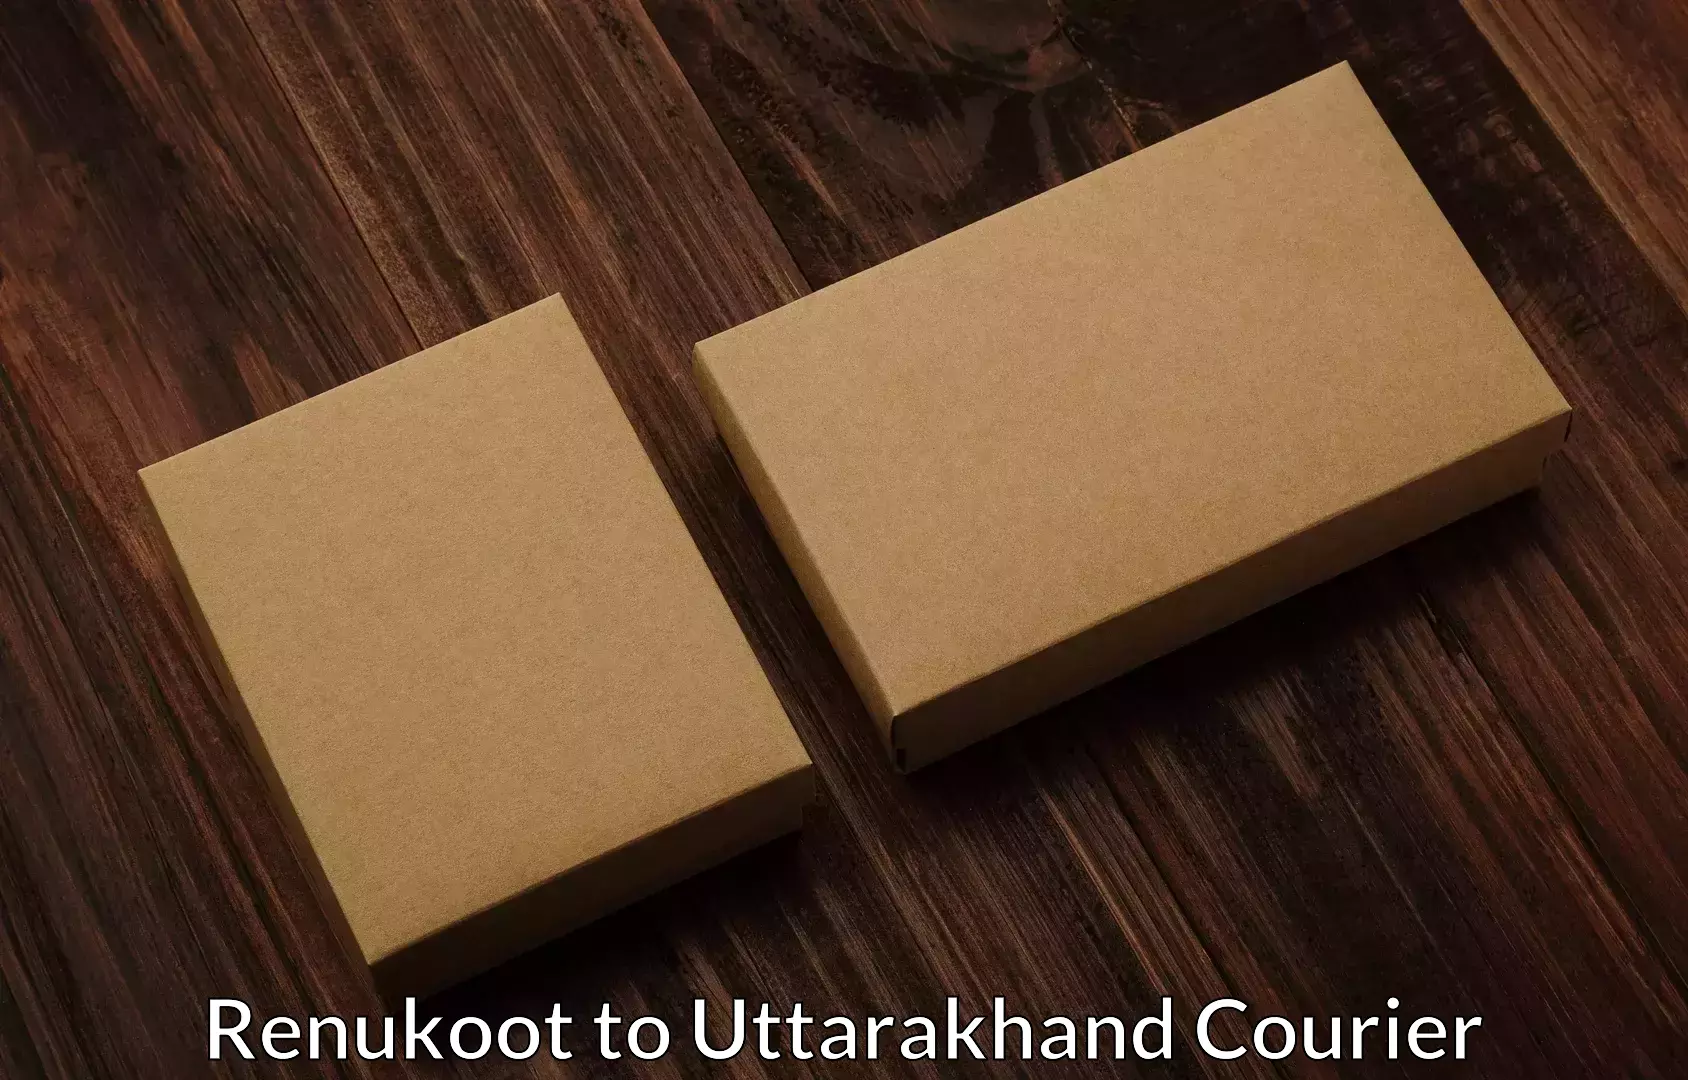 Nationwide household movers Renukoot to Uttarakhand